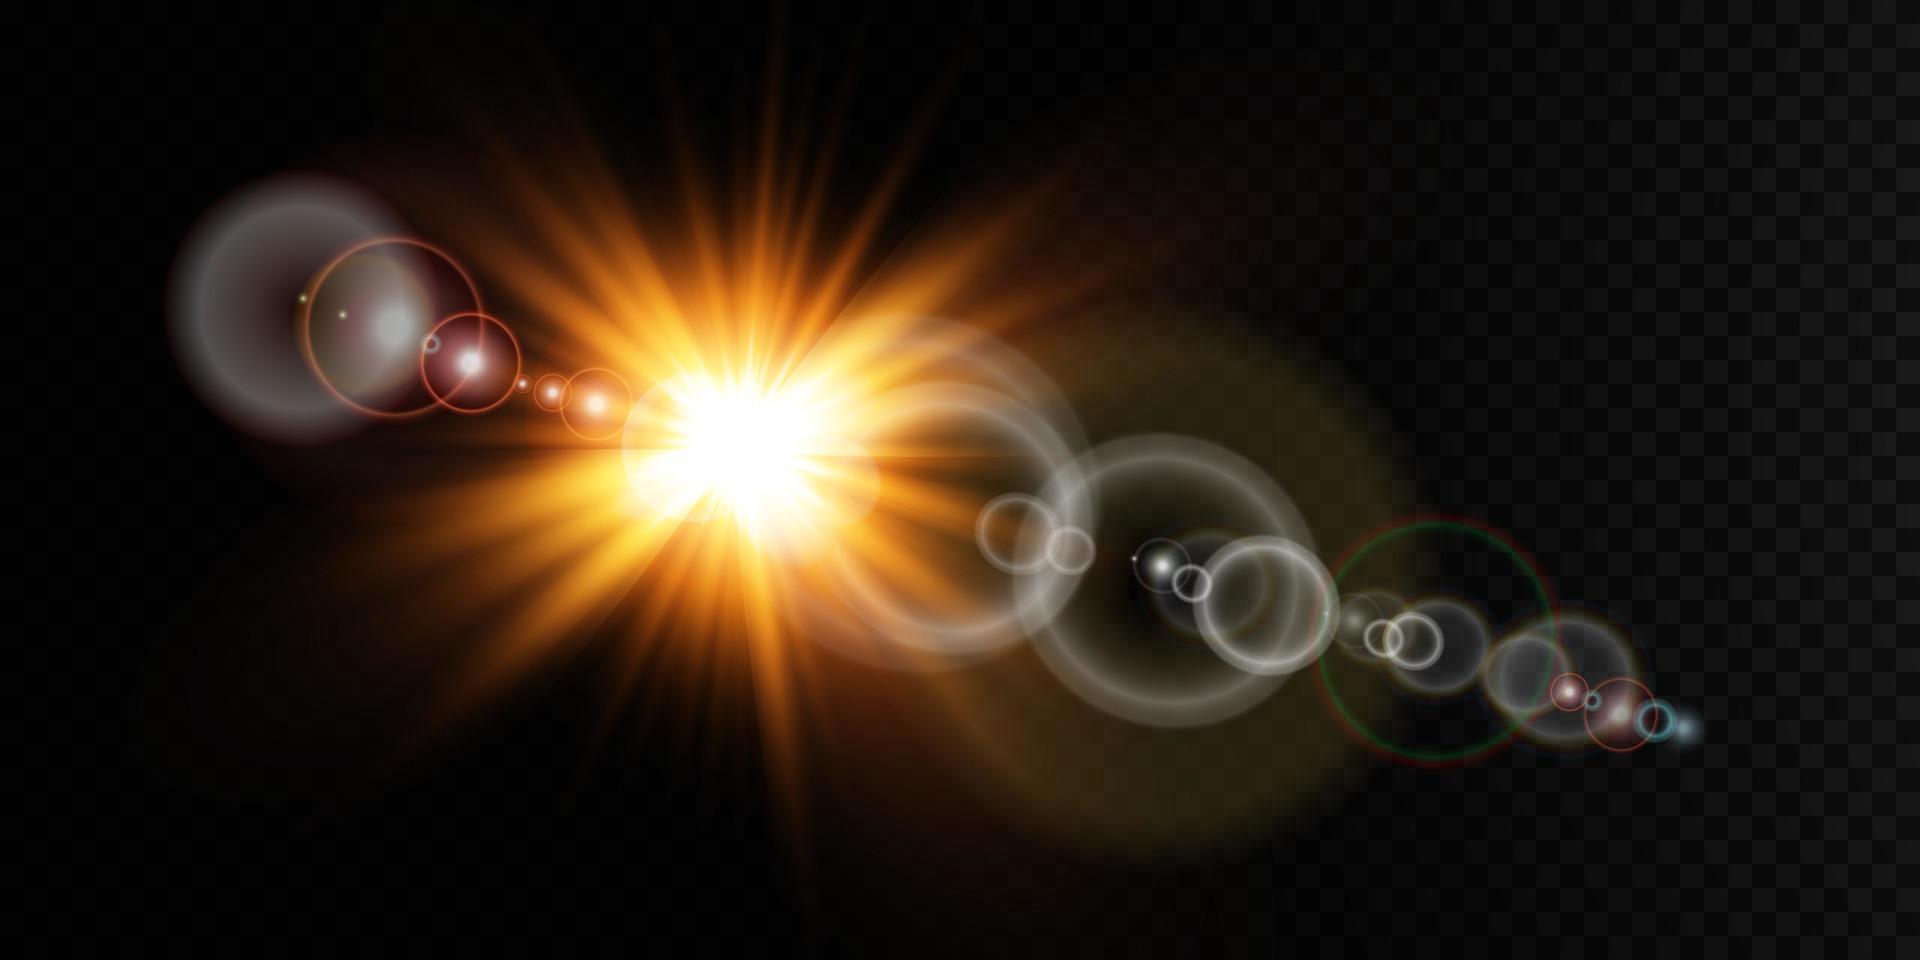 d'or étoile, sur une noir arrière-plan, le effet de lueur et des rayons de lumière, embrasé lumières, Soleil. vecteur. vecteur